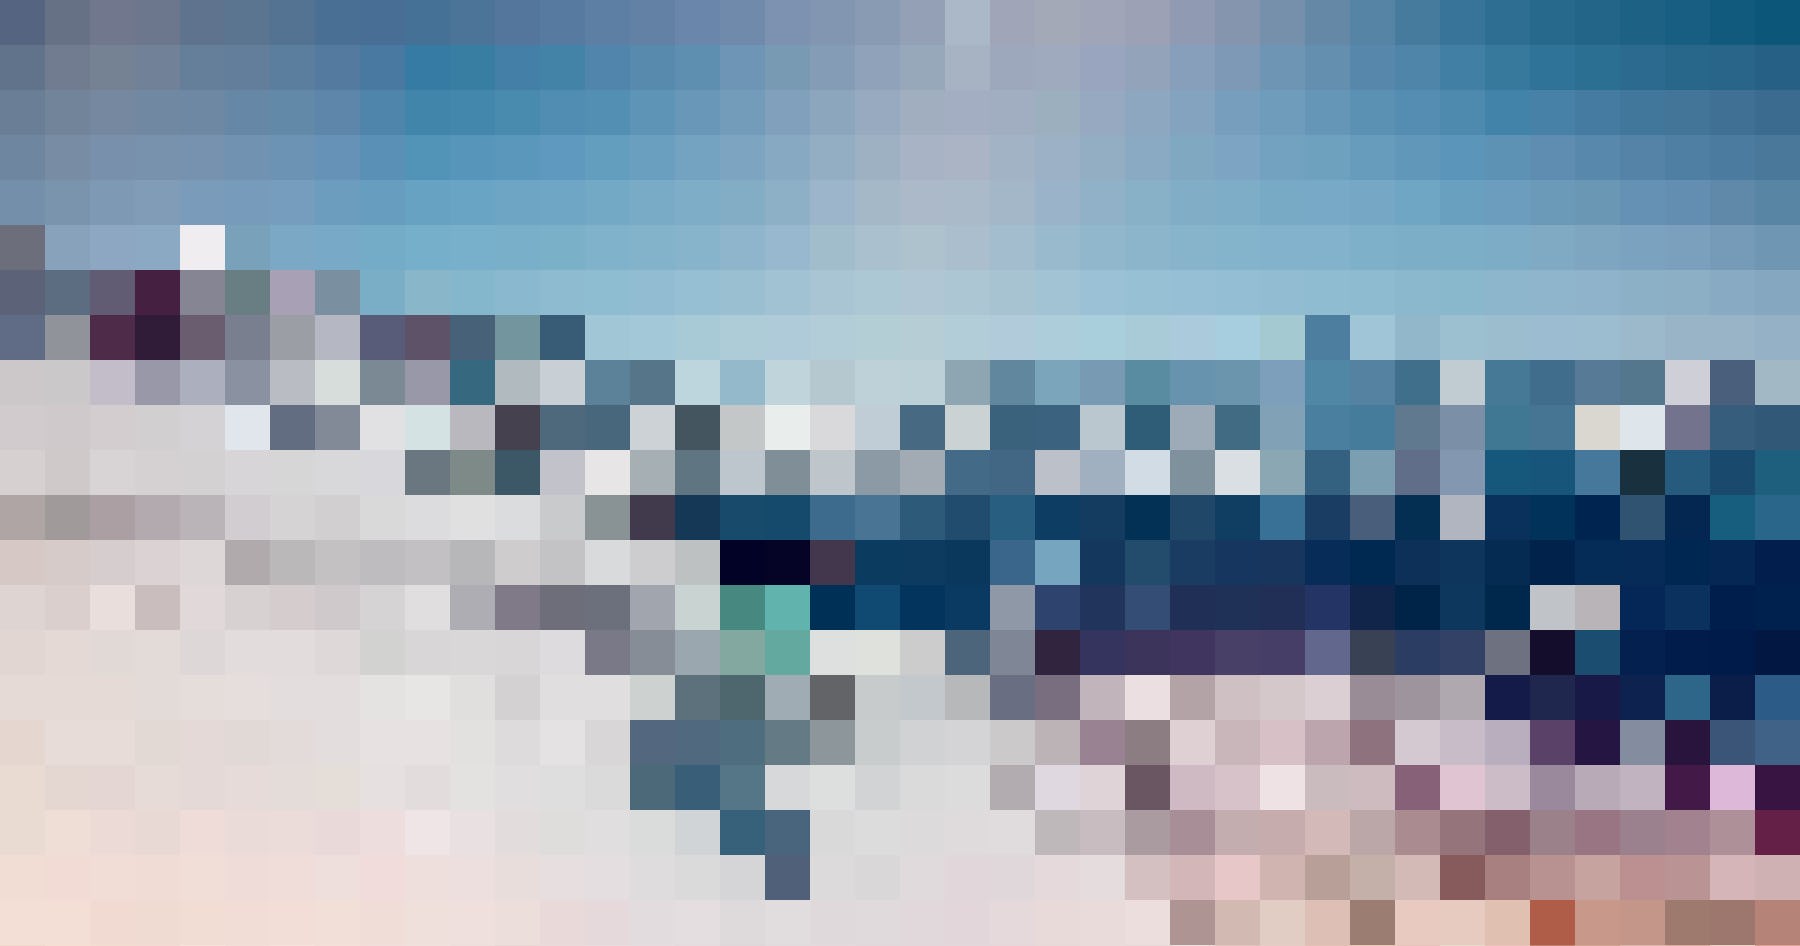 Des vues magnifiques et des pistes paradisiaques: voici l'hiver en Valais.